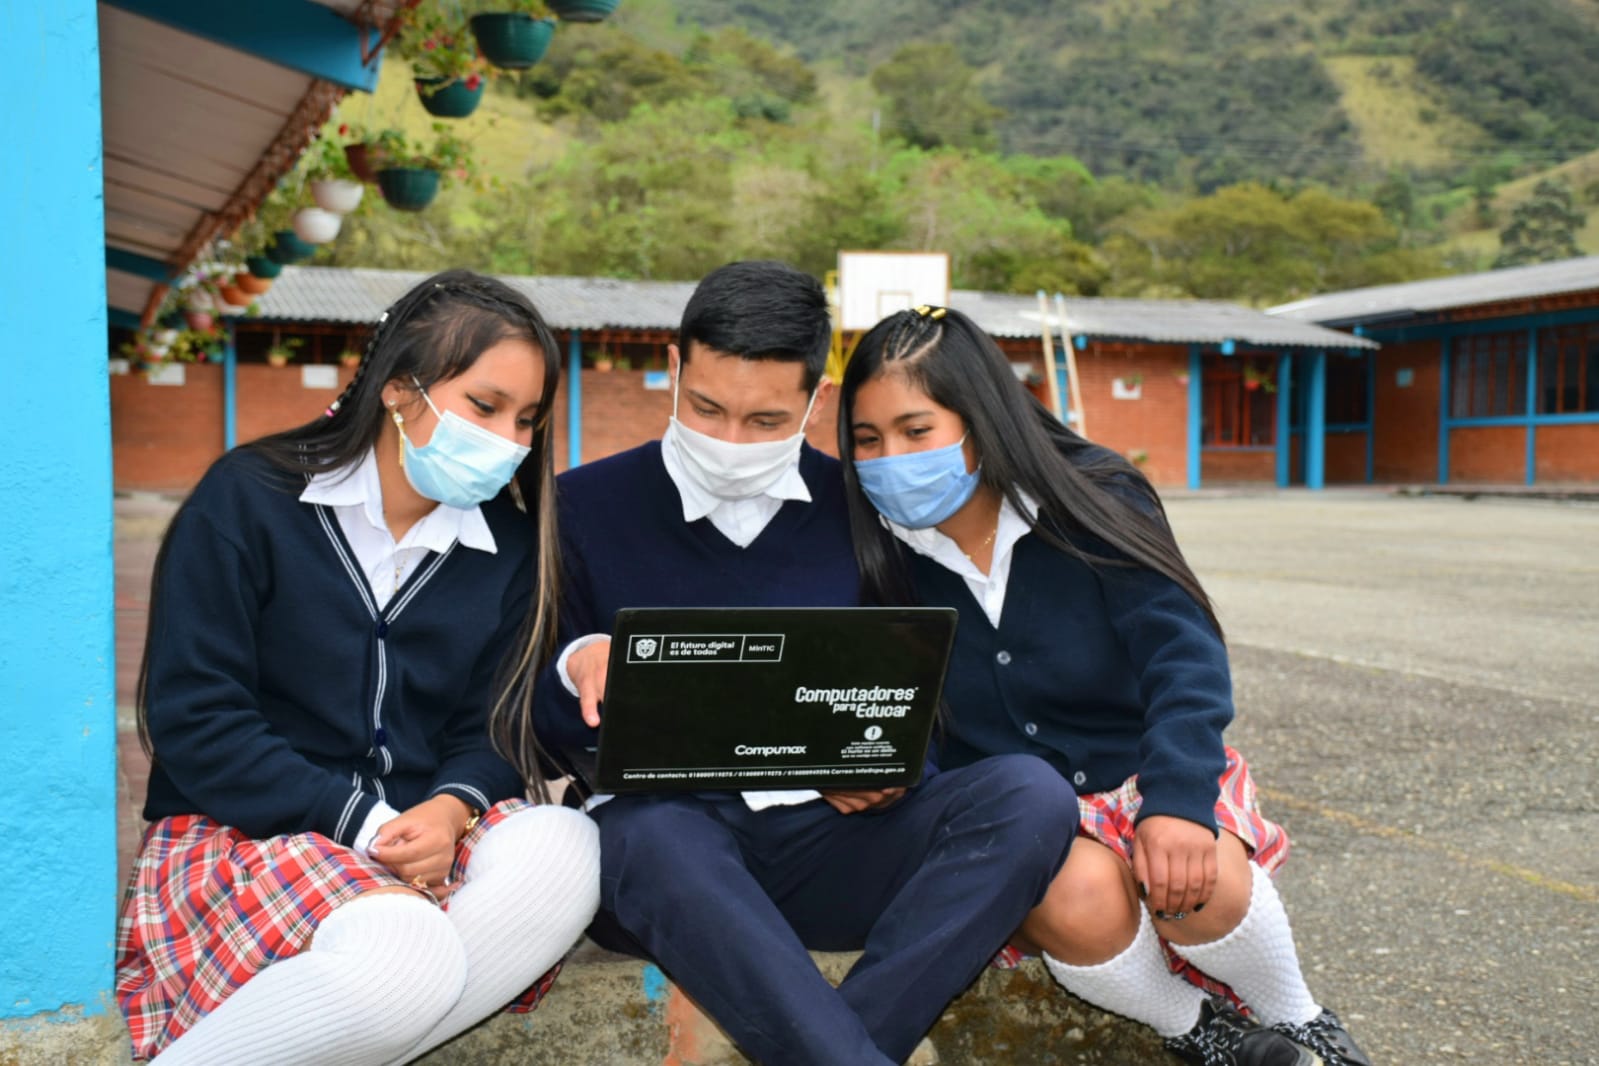 Imagen: Estudiantes compartiendo un dispositivo digital.